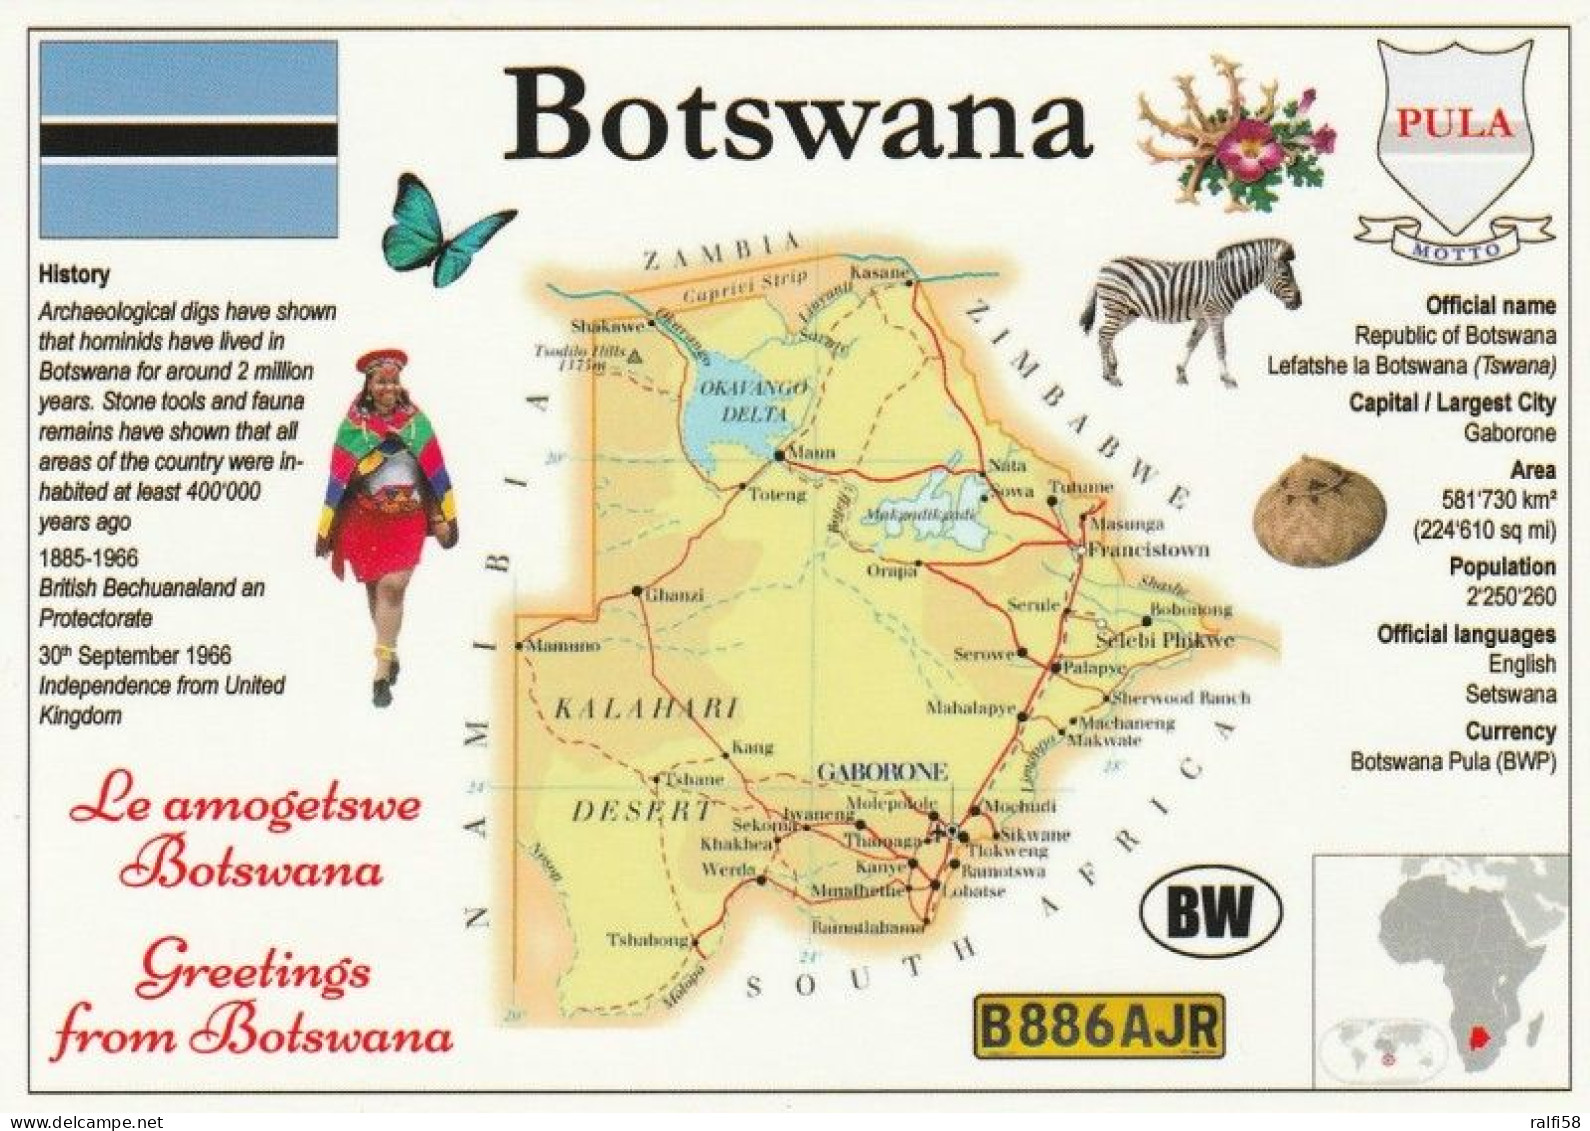 1 Map Of Botswana * 1 Ansichtskarte Mit Der Landkarte Von Botswana, Informationen Und Der Flagge Des Landes * - Landkaarten